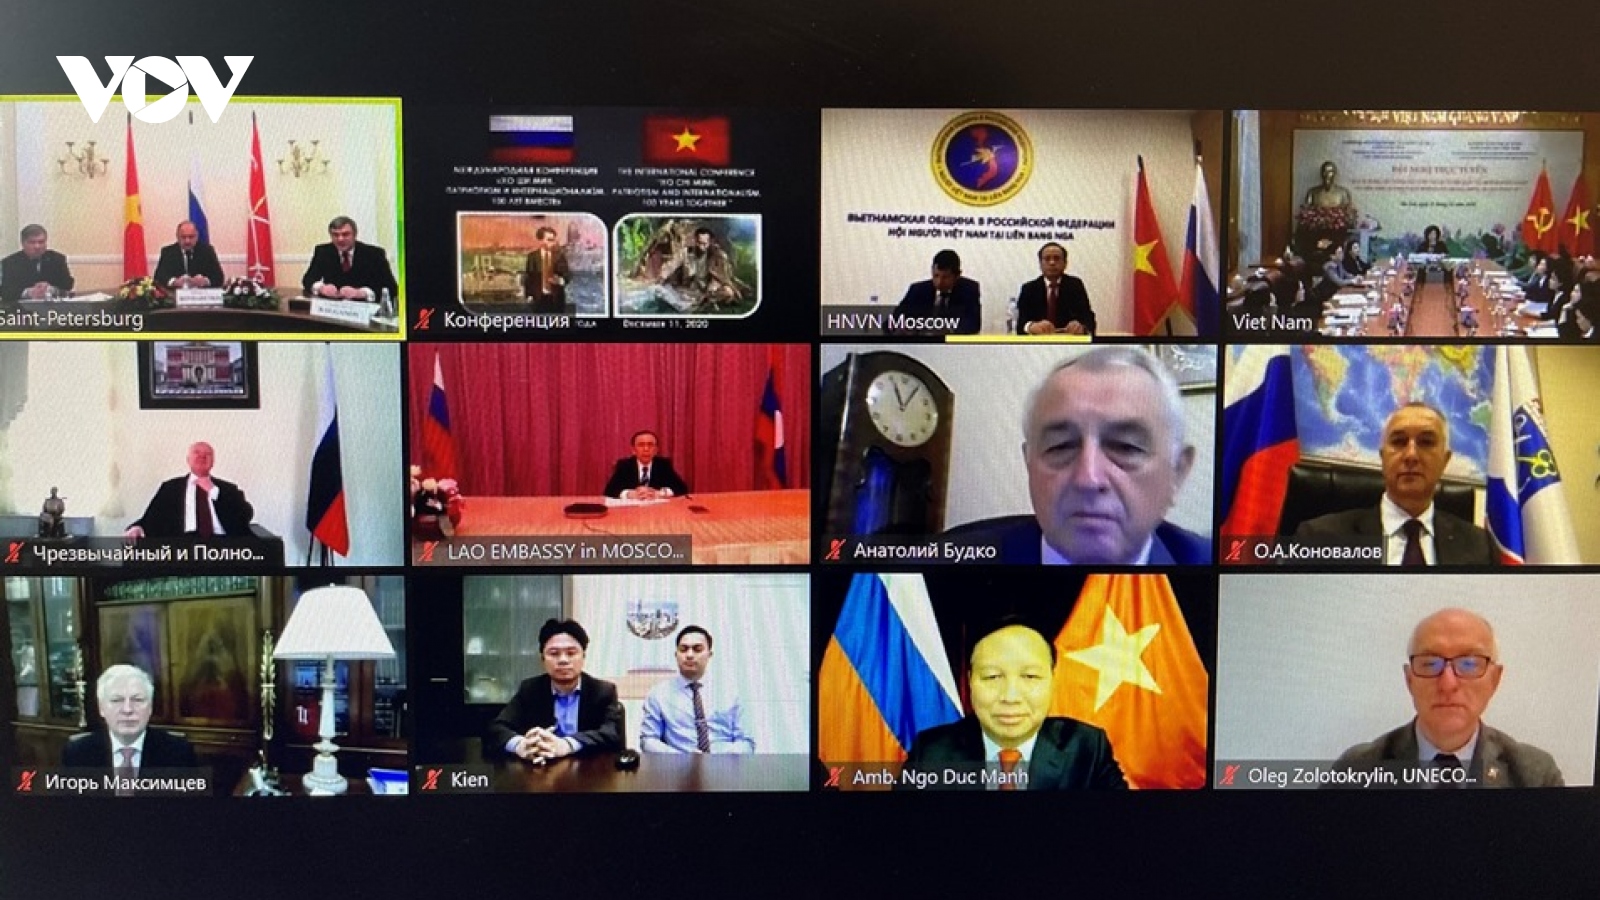 Hội thảo trực tuyến: Chủ tịch Hồ Chí Minh. Chủ nghĩa yêu nước và chủ nghĩa quốc tế